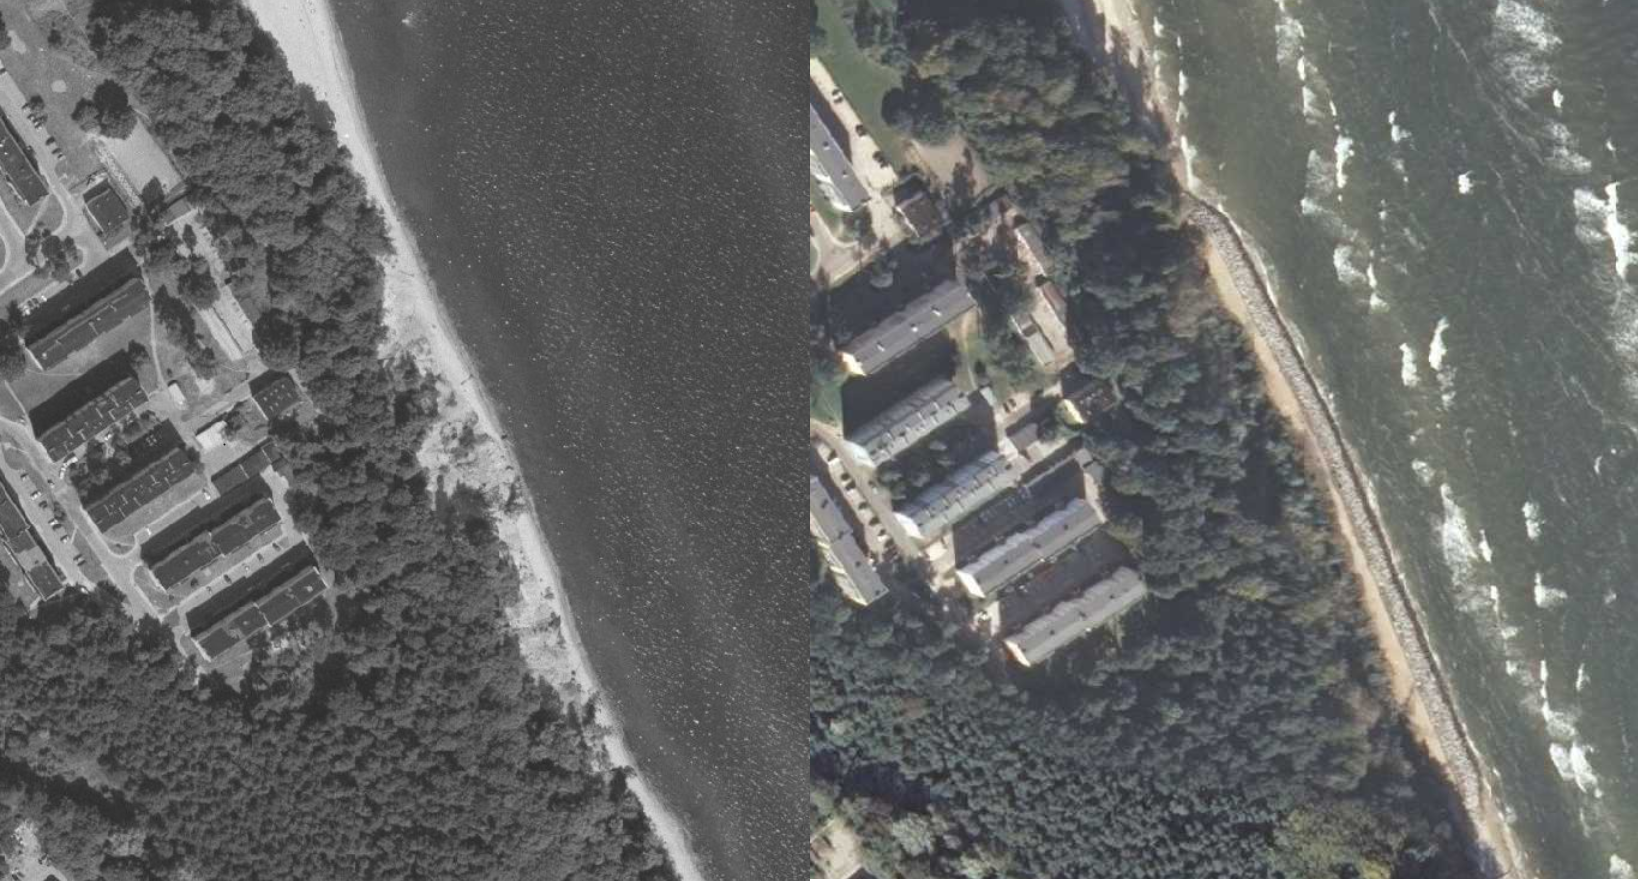 Zdjęcie przedstawia dwa zdjęcia przylegające do siebie: jedno jest czarno‑białe, drugie kolorowe. Na zdjęciach jest morski brzeg. W jego pobliżu znajdują się budynki. Pomiędzy plażą a budynkami jest pas lądu porośnięty drzewami. 